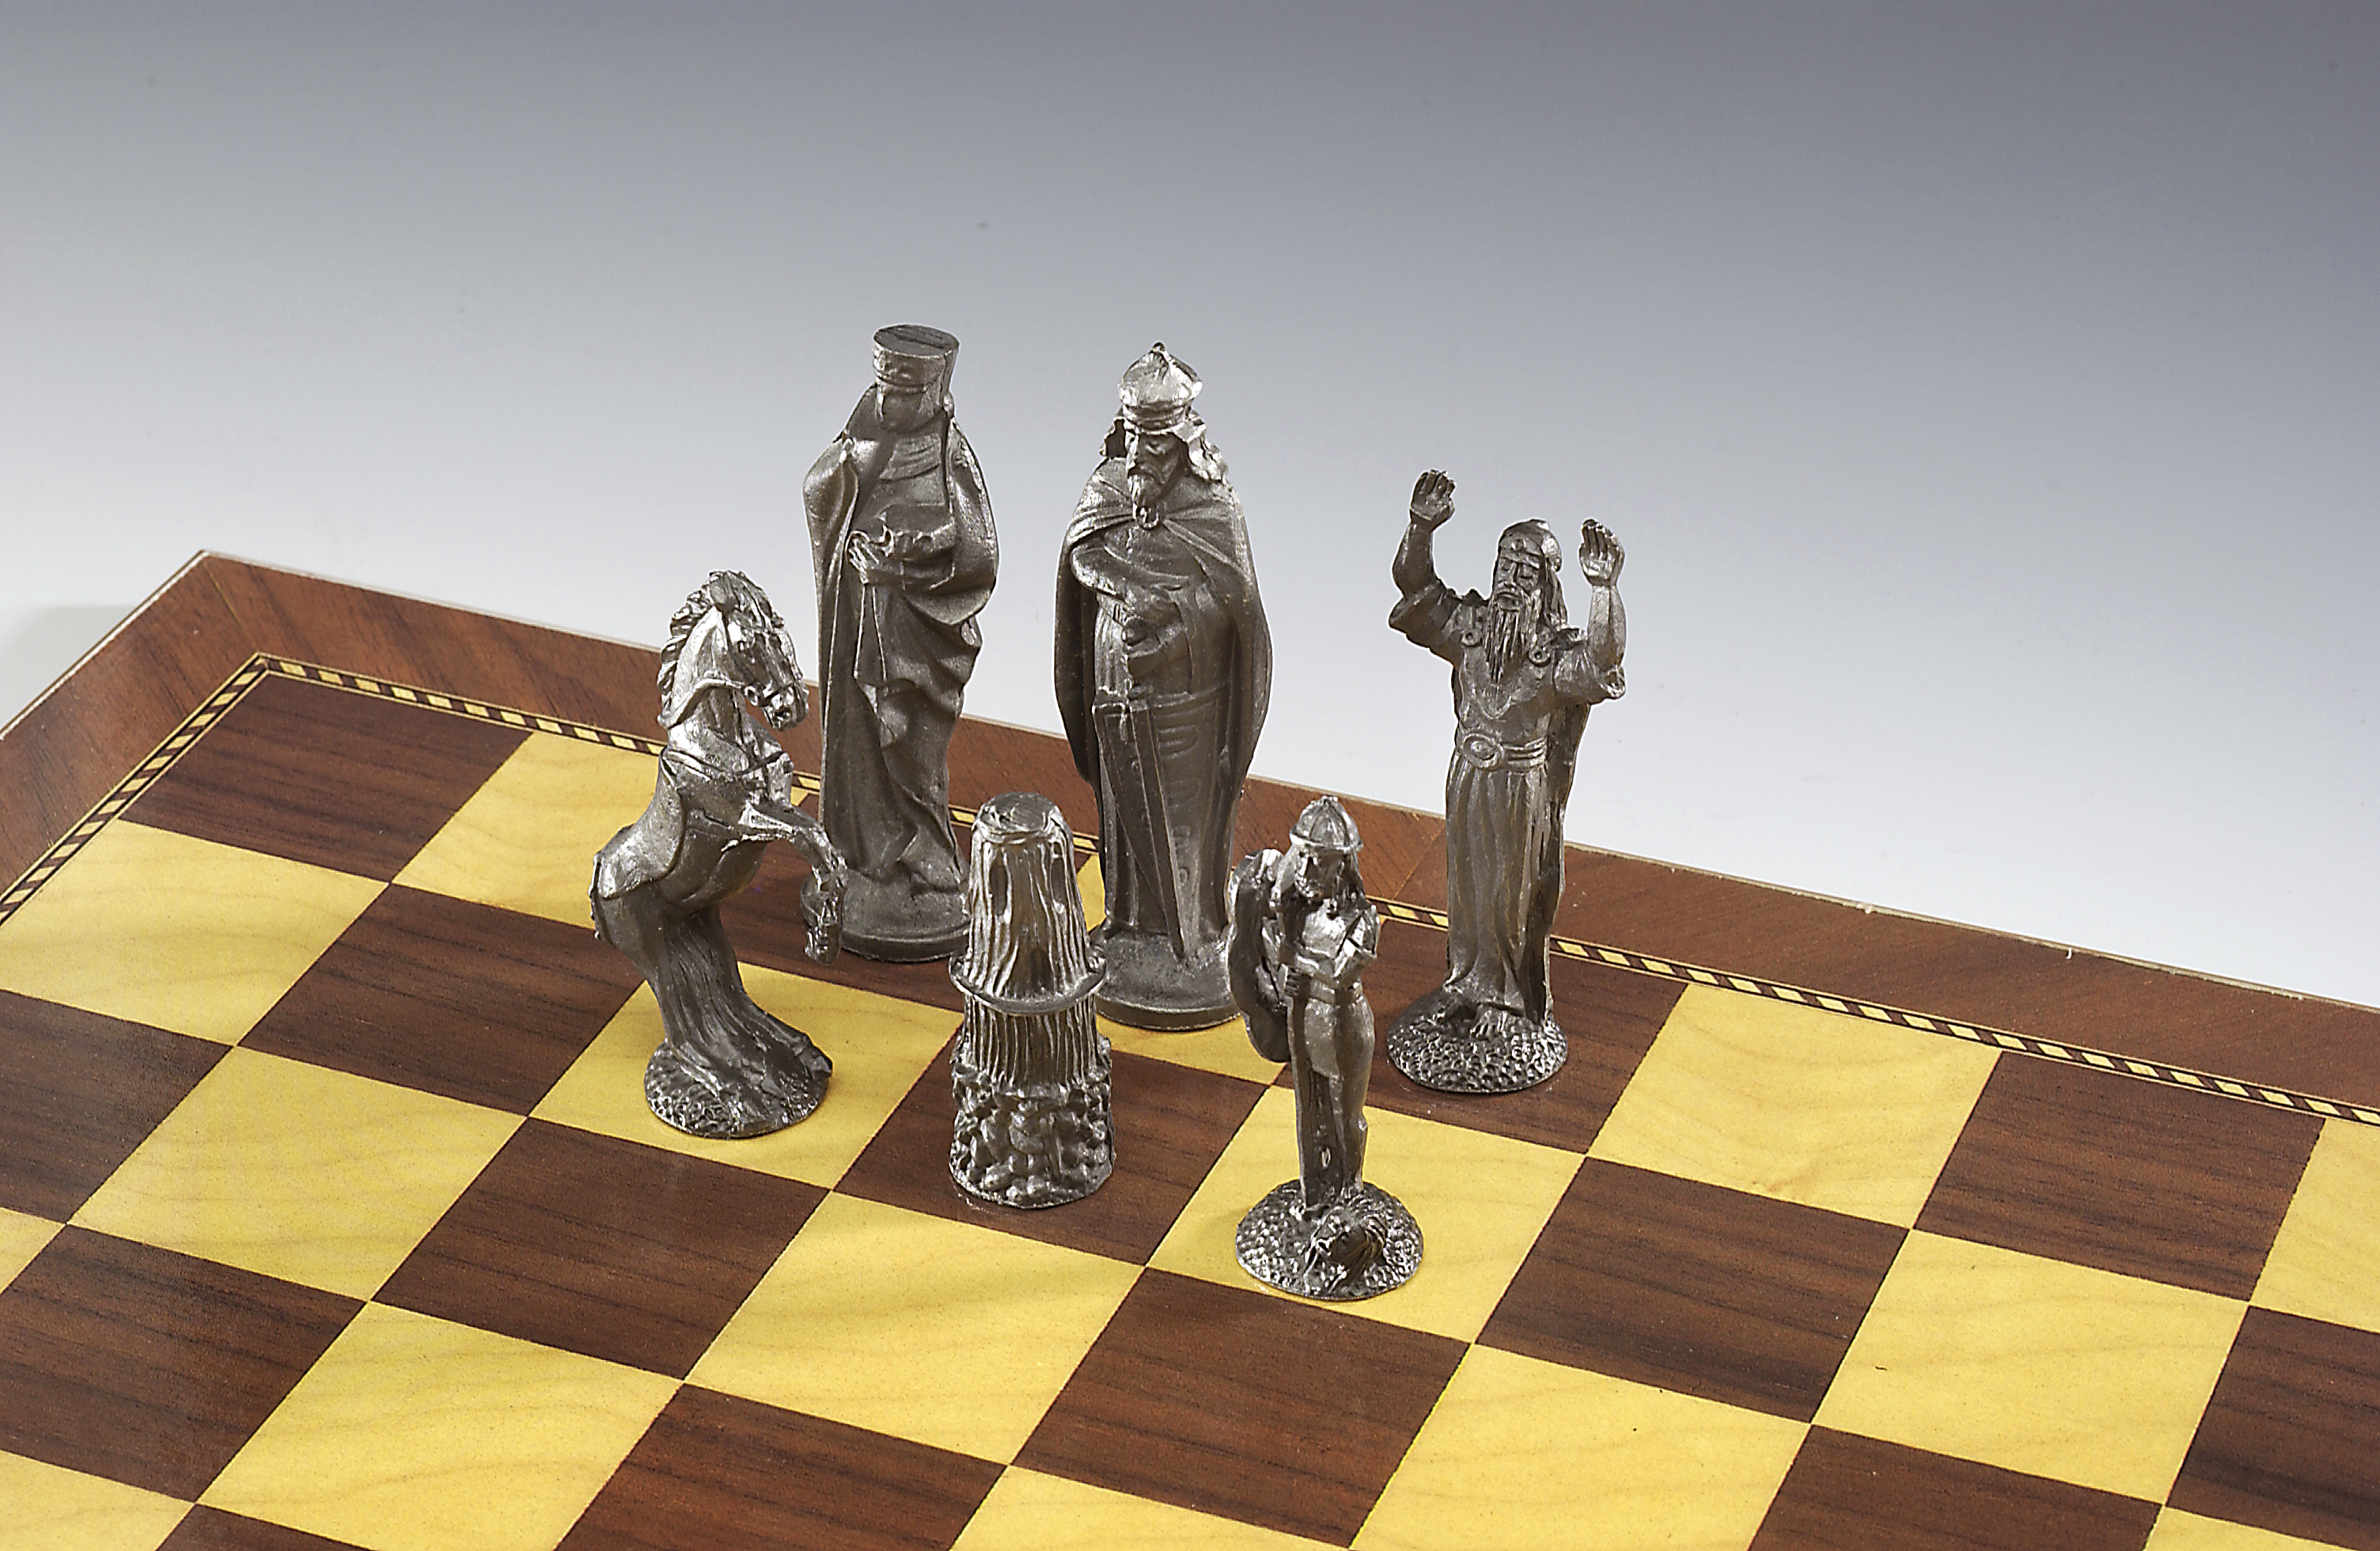 Wooden Chess Set - Irish Creative Stamping Ltd.